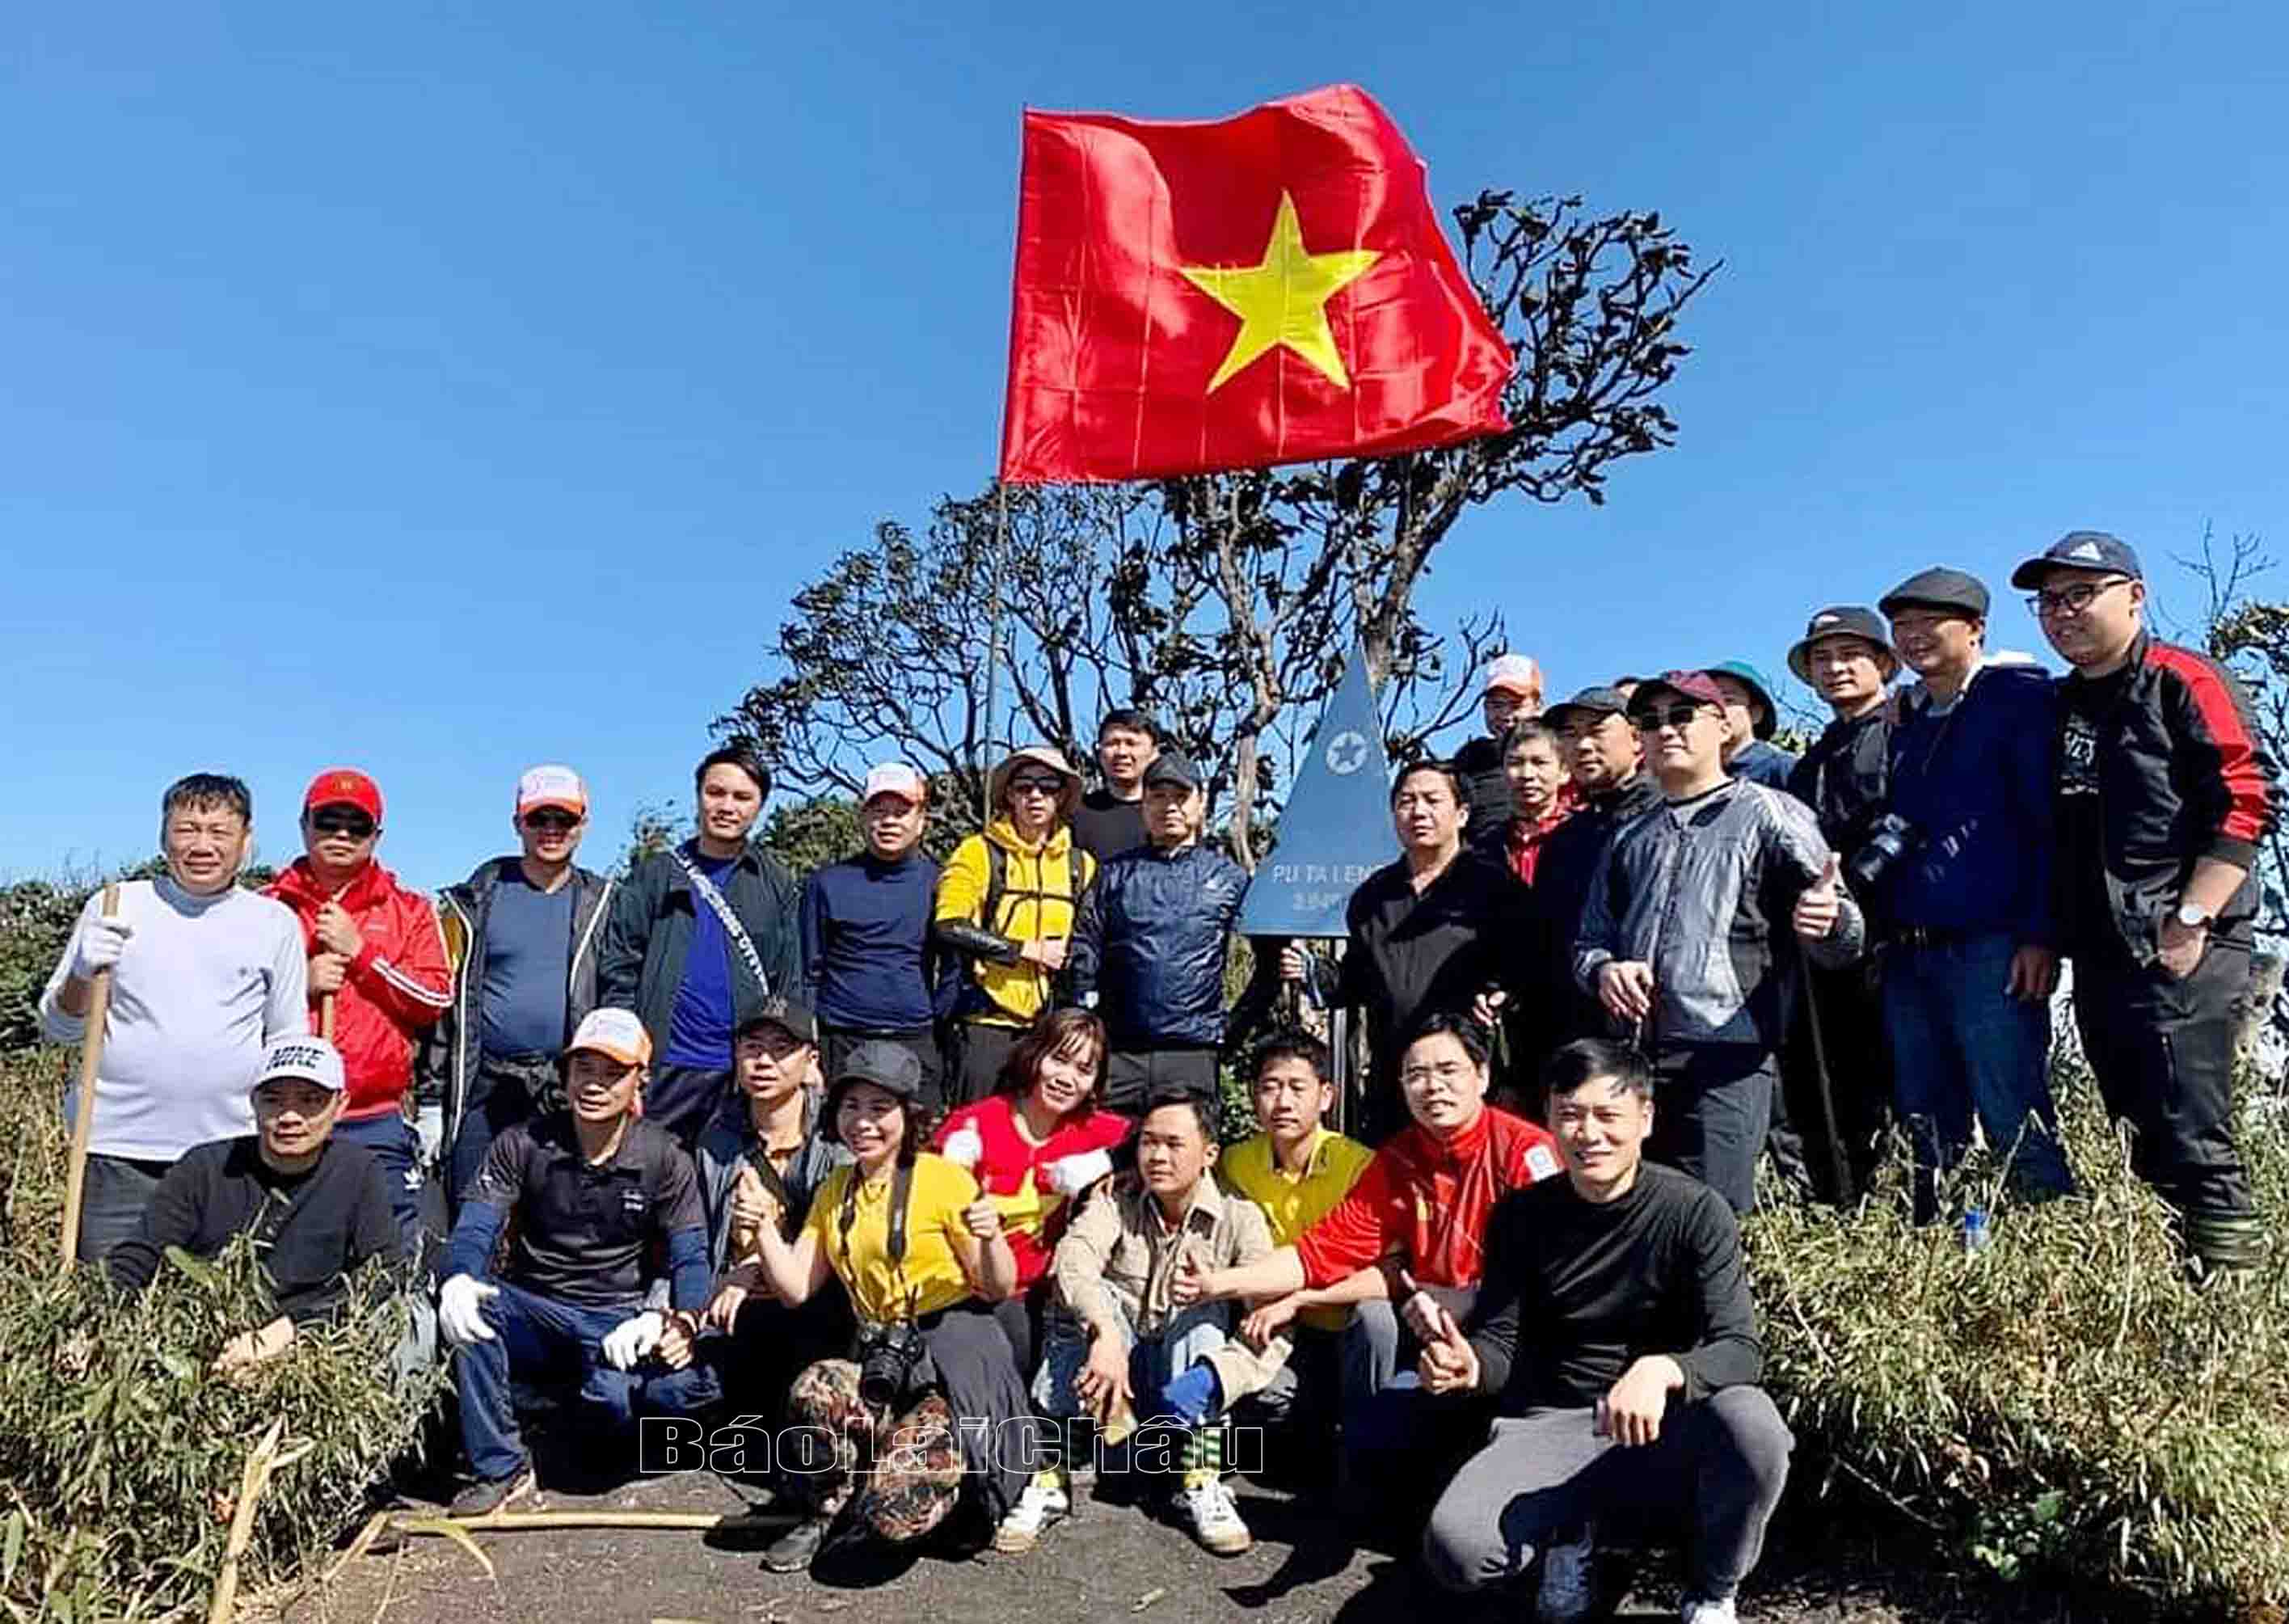 Lãnh đạo tỉnh, huyện cùng đại diện các công ty, doanh nghiệp phát triển du lịch lữ hành trong nước chụp ảnh lưu niệm tại đỉnh Pu Ta Leng (huyện Tam Đường).